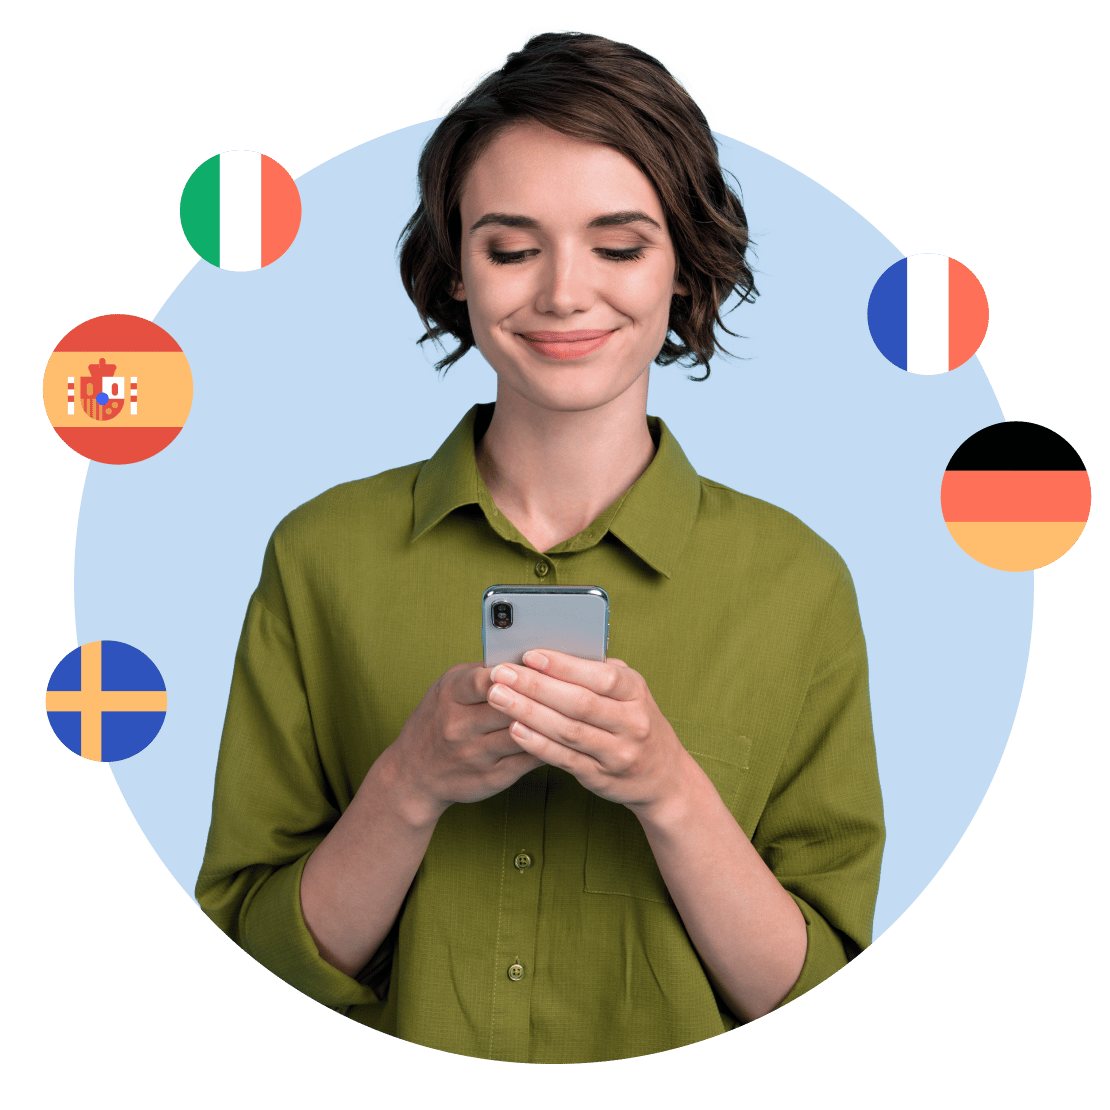 Uma mulher feliz aprendendo vários idiomas no Duolingo com maior privacidade graças à NordVPN.